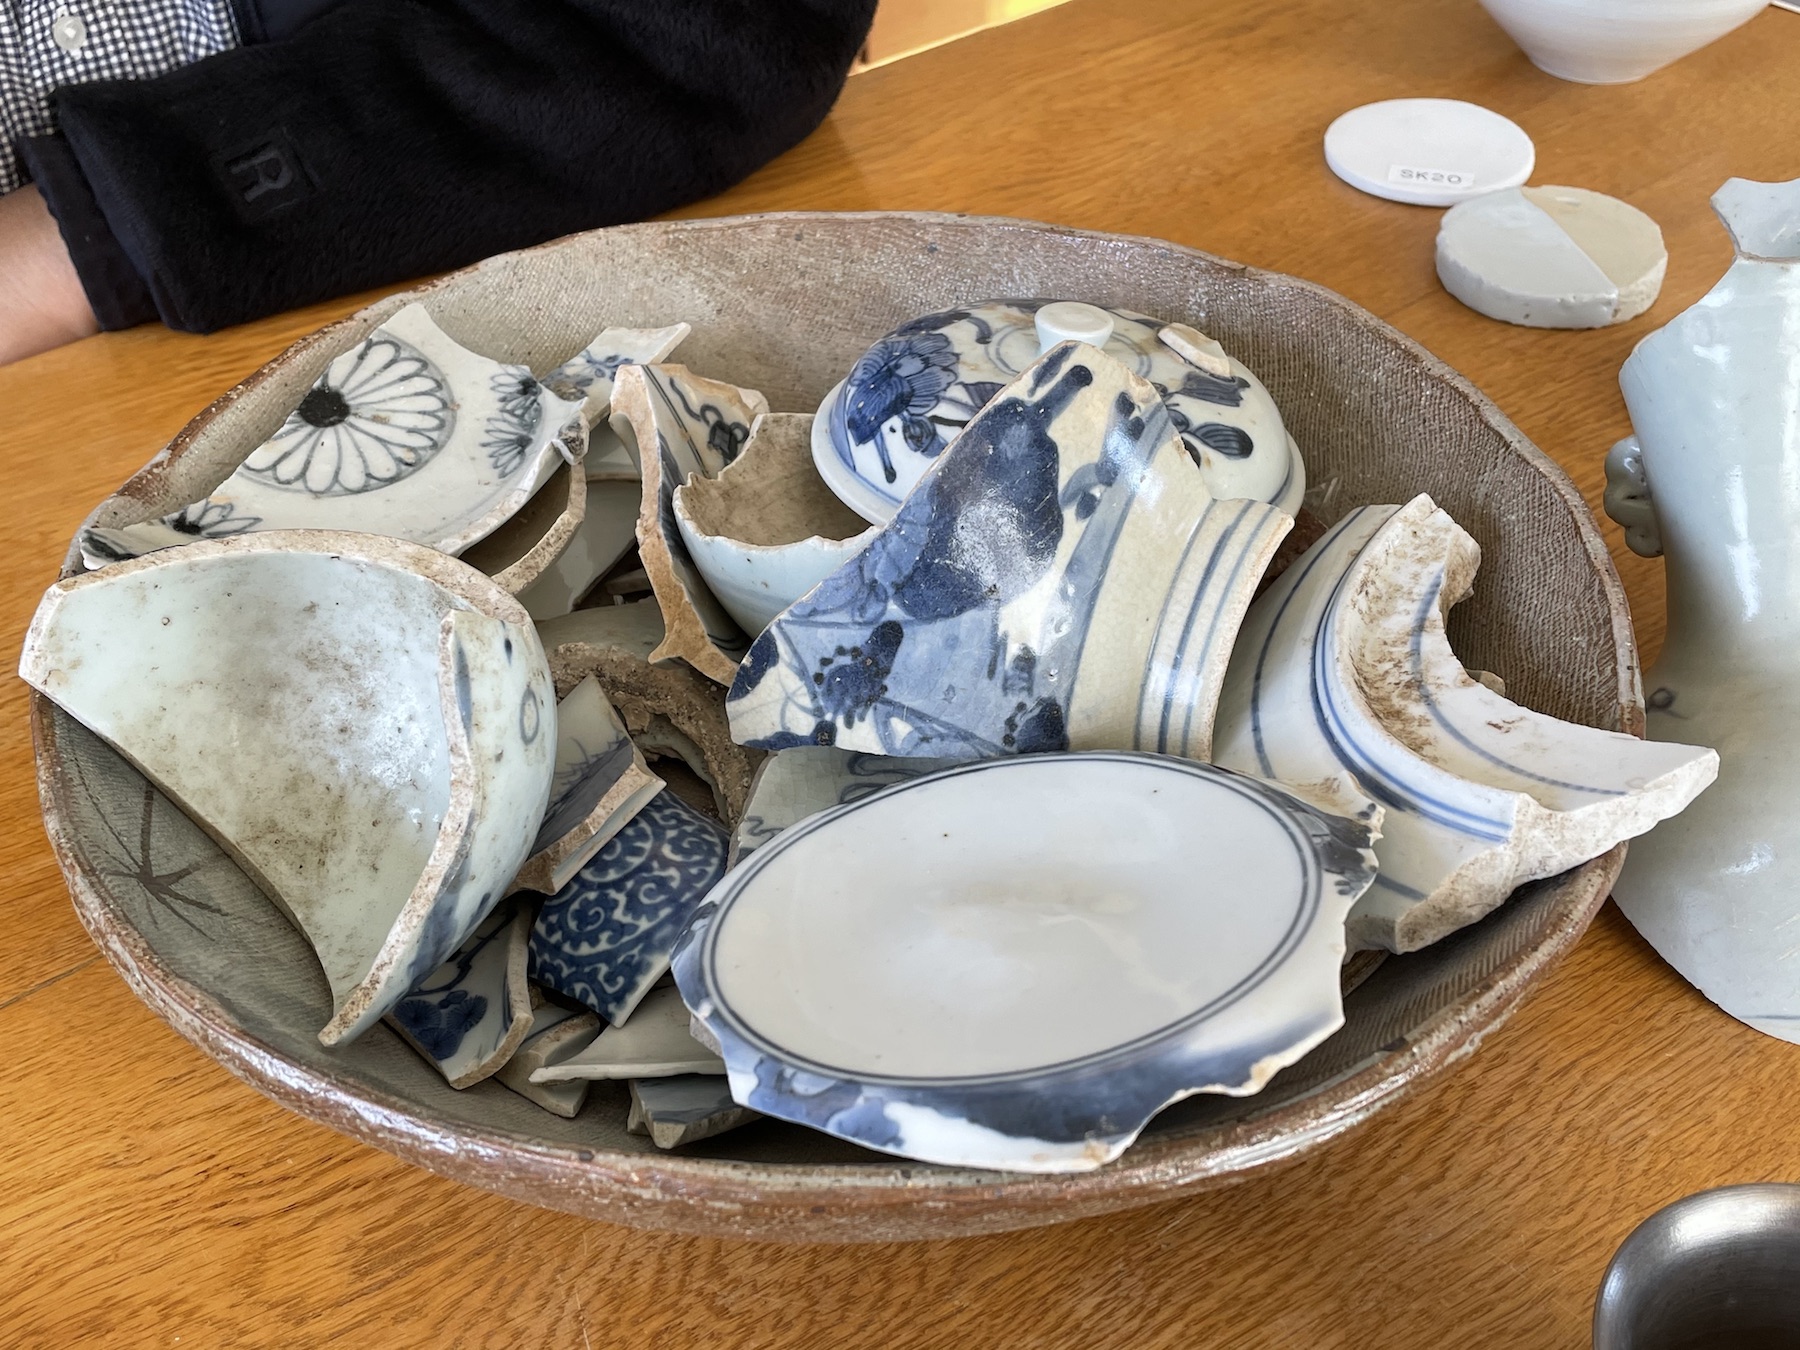 寺内氏の自宅の庭に落ちていた1930年代から1970年代の陶片。初期伊万里の魅力に気付いたことで「危ないガラクタだった陶片が、宝物に変わった」と笑いながら見せてくれた。